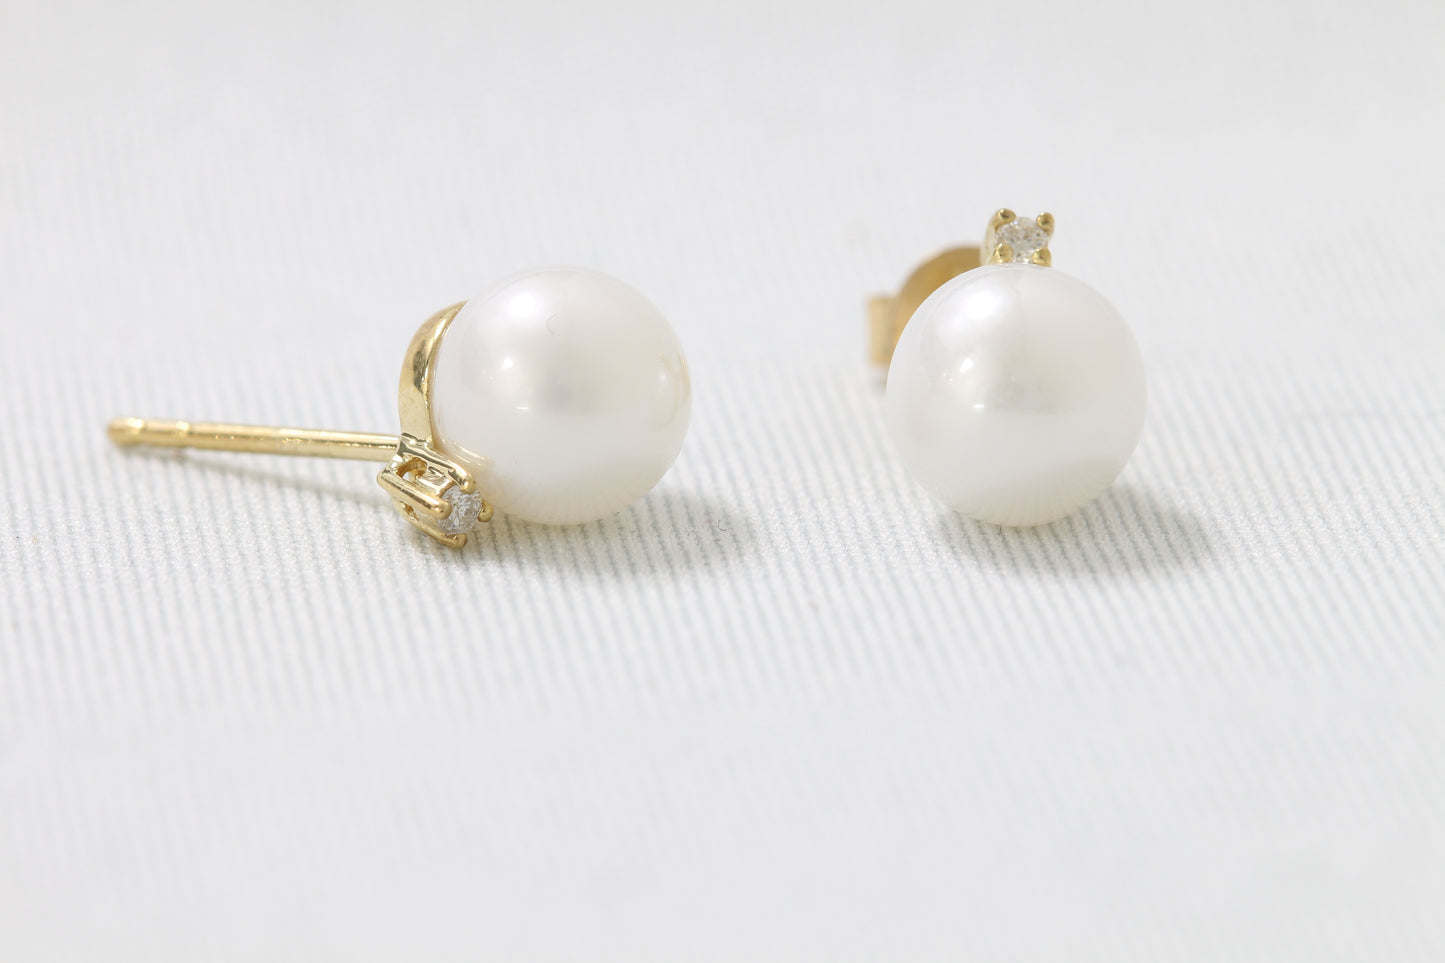 10k 8mm pearl and diamond earrings